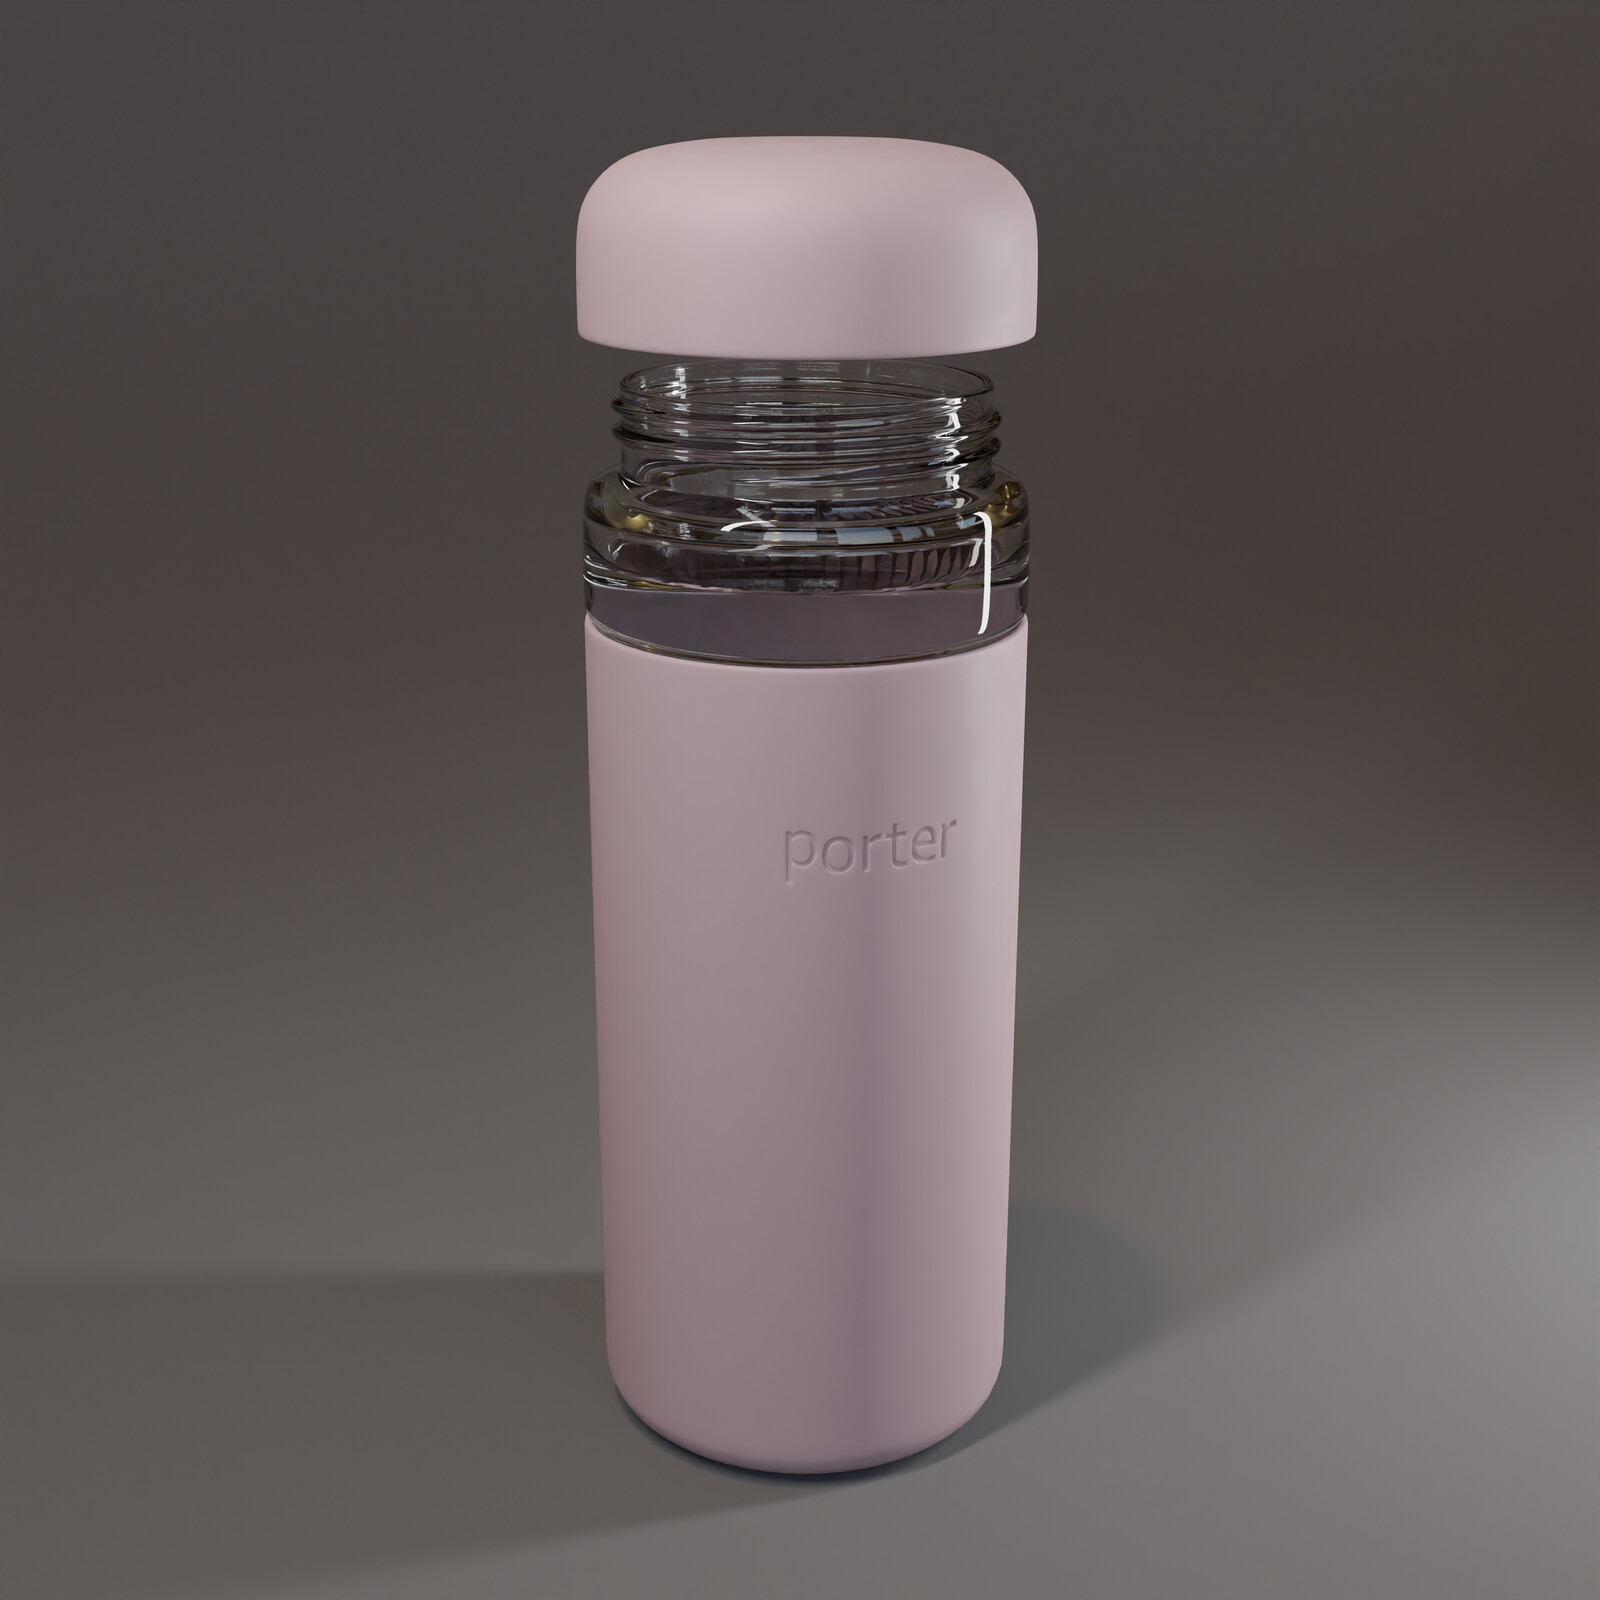 'Porter' water bottle